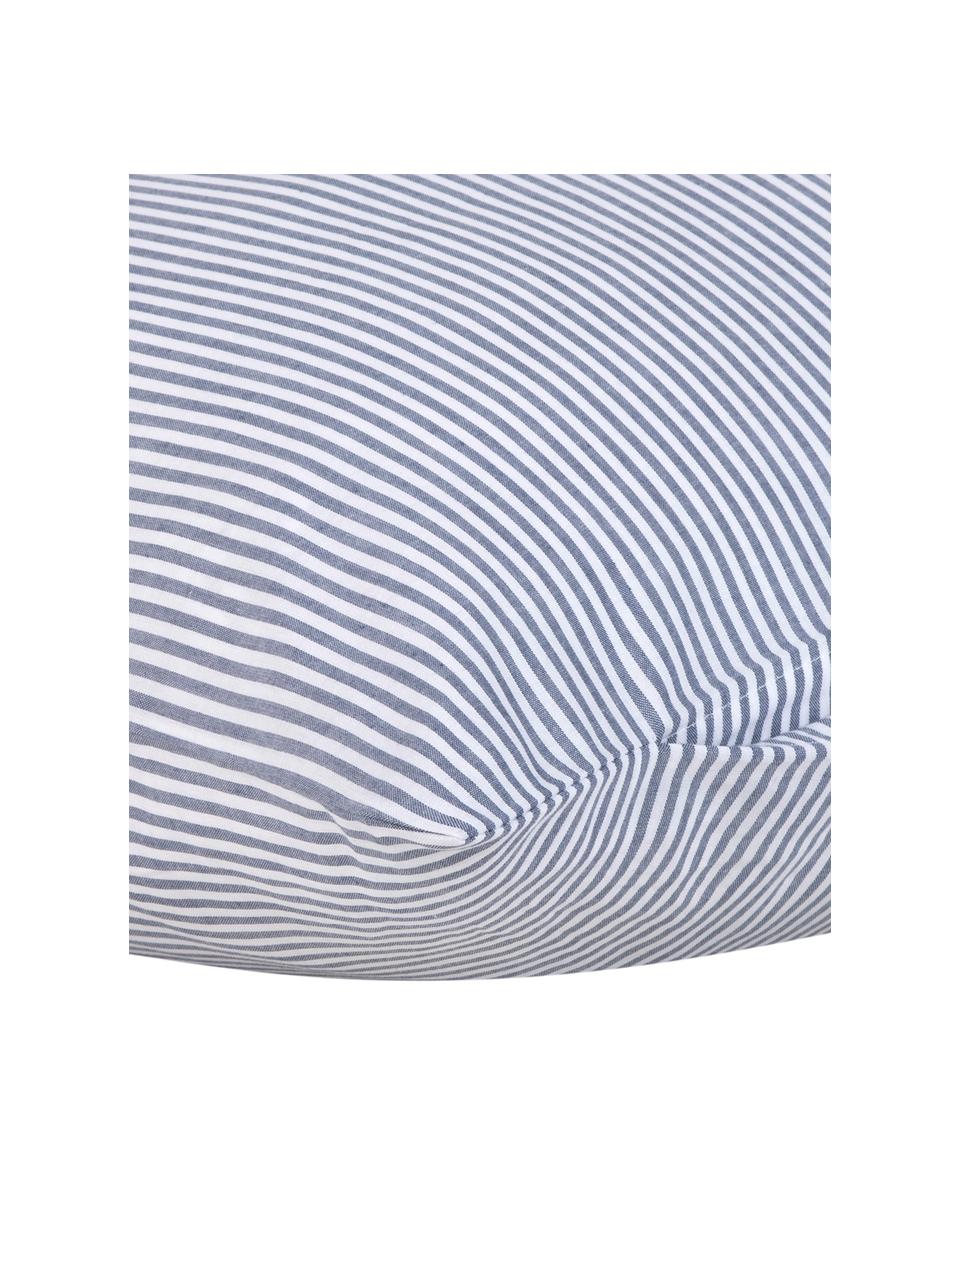 Baumwoll-Kopfkissenbezüge Ellie in Blau/Weiß, fein gestreift, 2 Stück, Webart: Renforcé Fadendichte 118 , Weiß, Dunkelblau, B 40 x L 80 cm